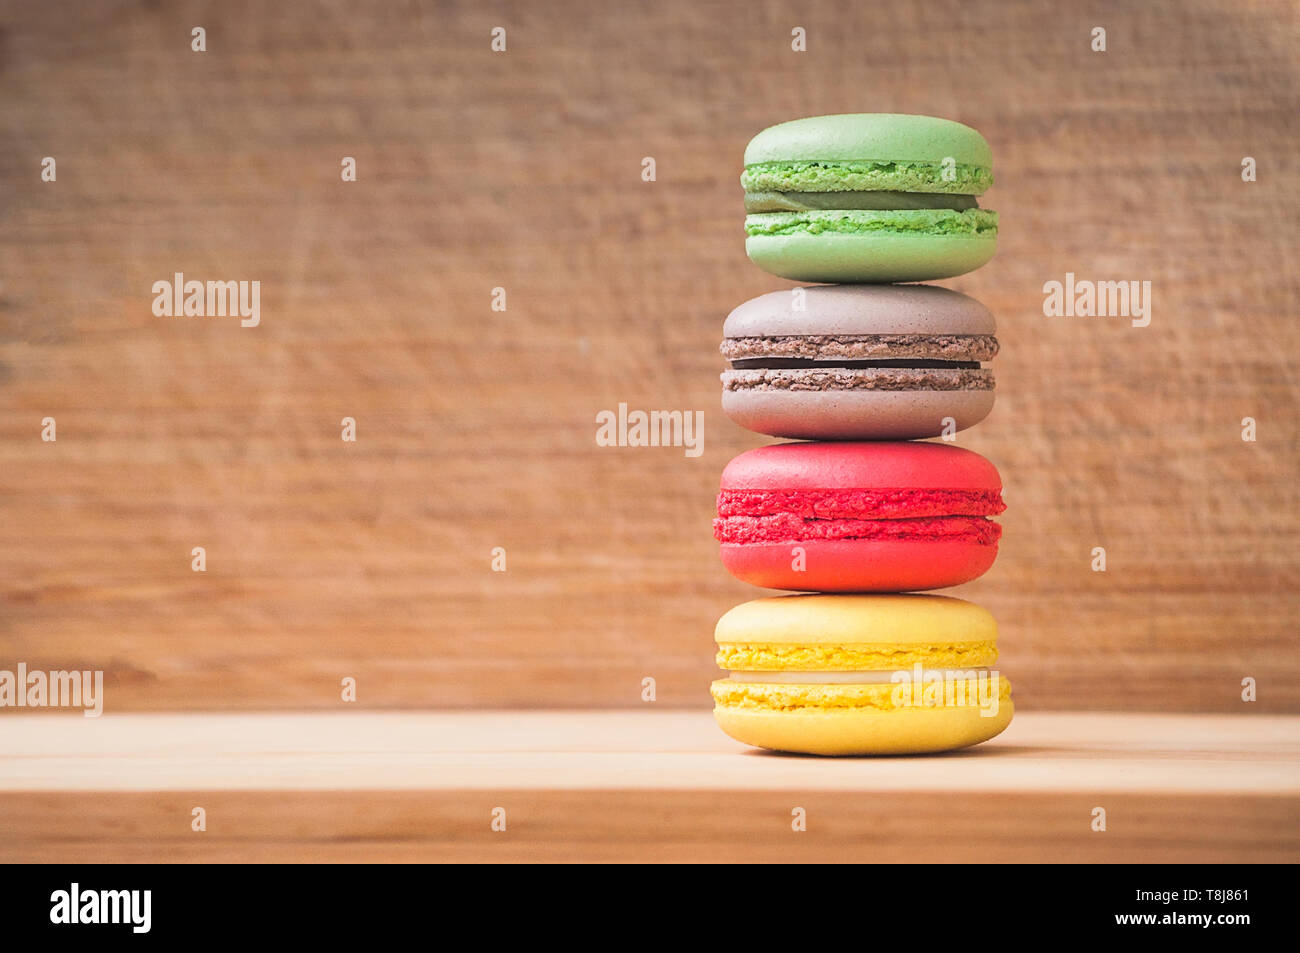 Cuatro coloridos sabrosos macarons franceses aislado sobre la textura de la madera Foto de stock